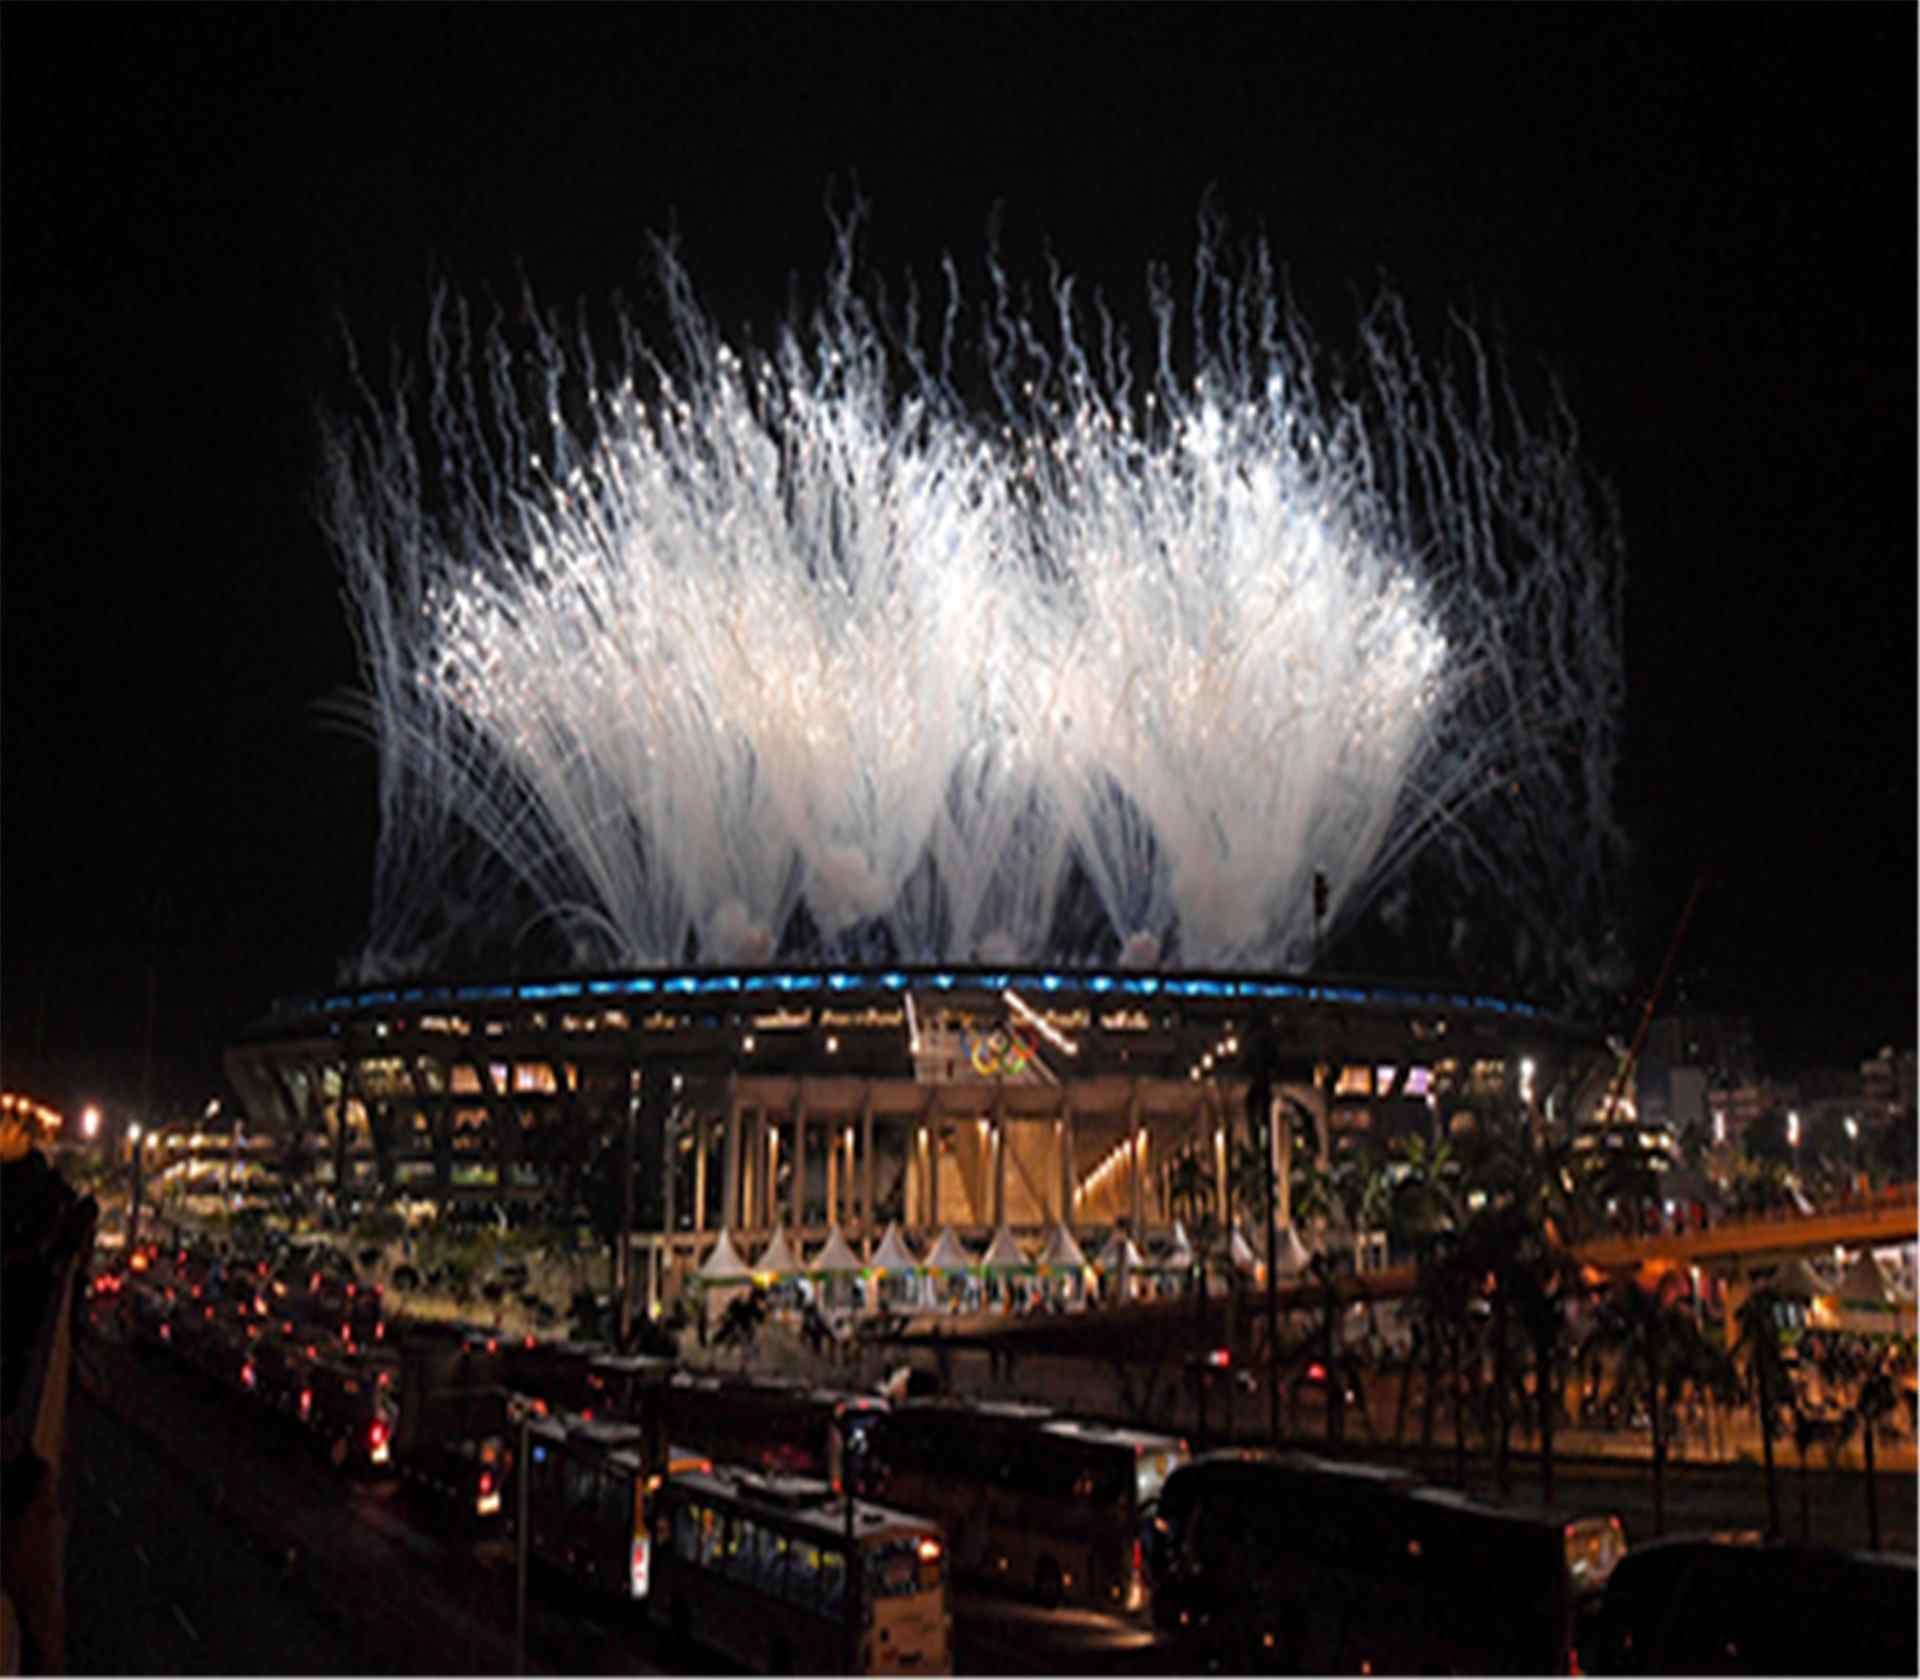 里约热内卢奥运会精彩开幕式图片下载